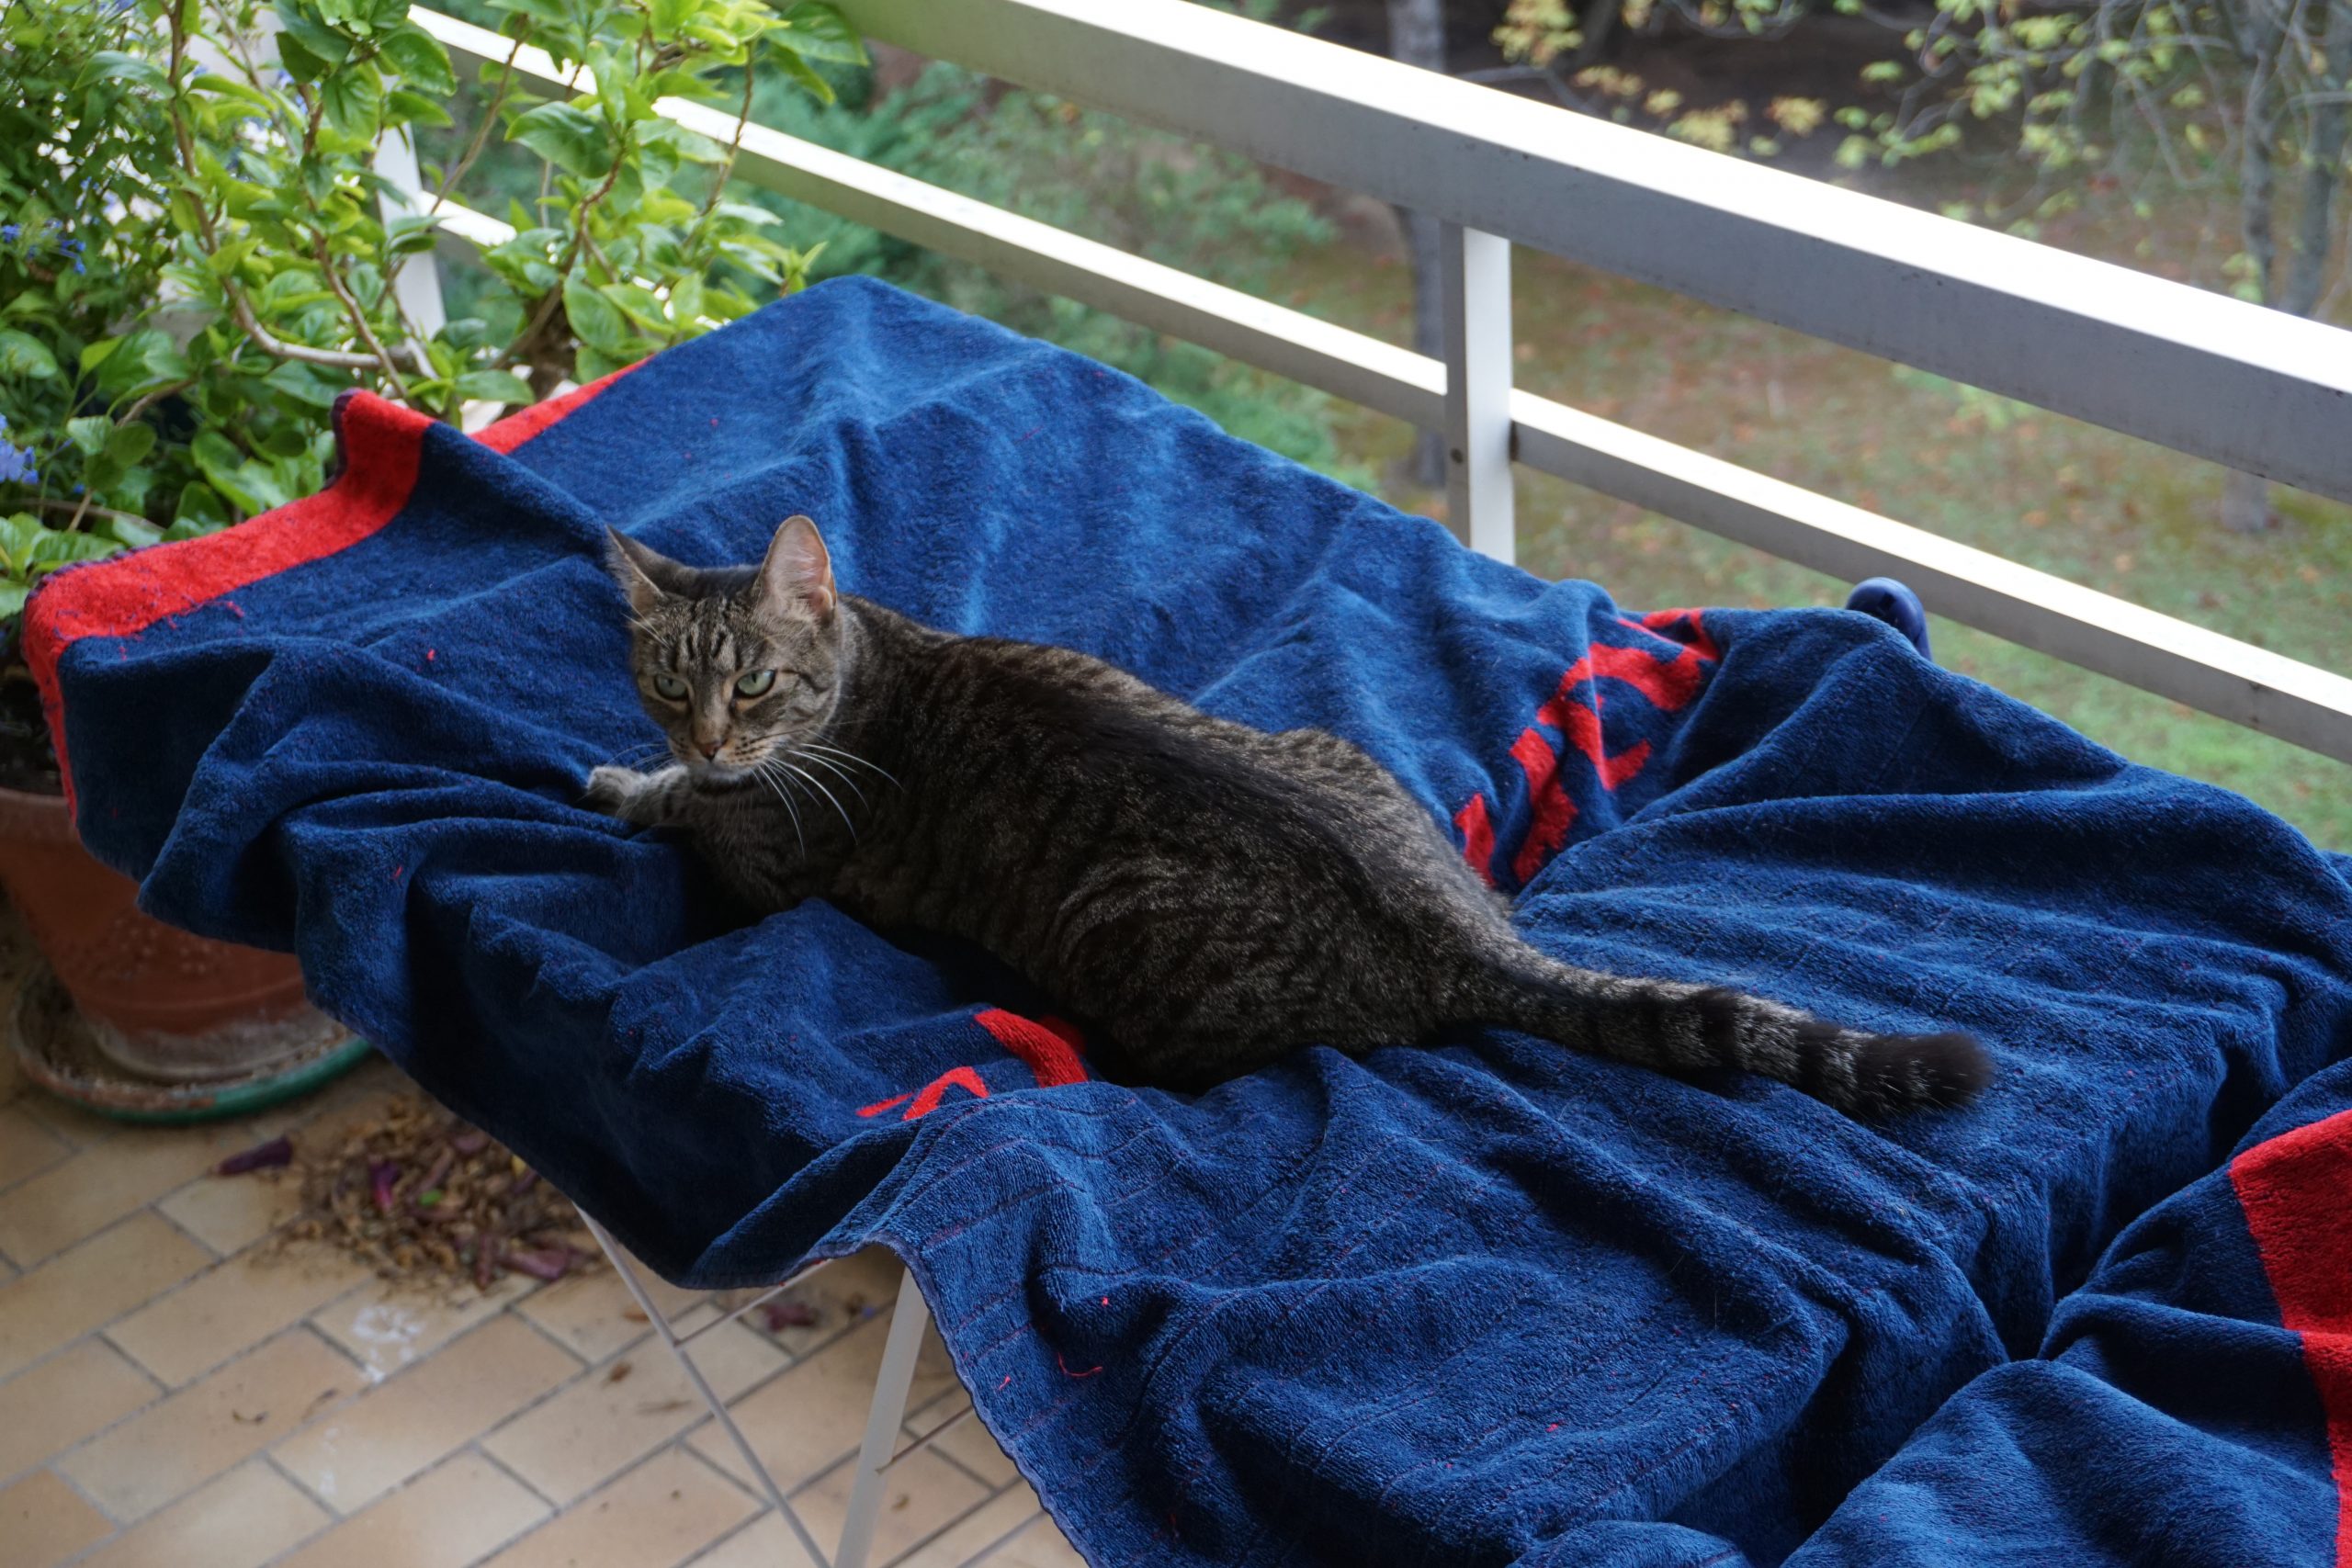 Sur un balcon, en plongée, une chatte est installée de tout son long pattes tendues sur un linge en train de sécher sur l'étendoir.